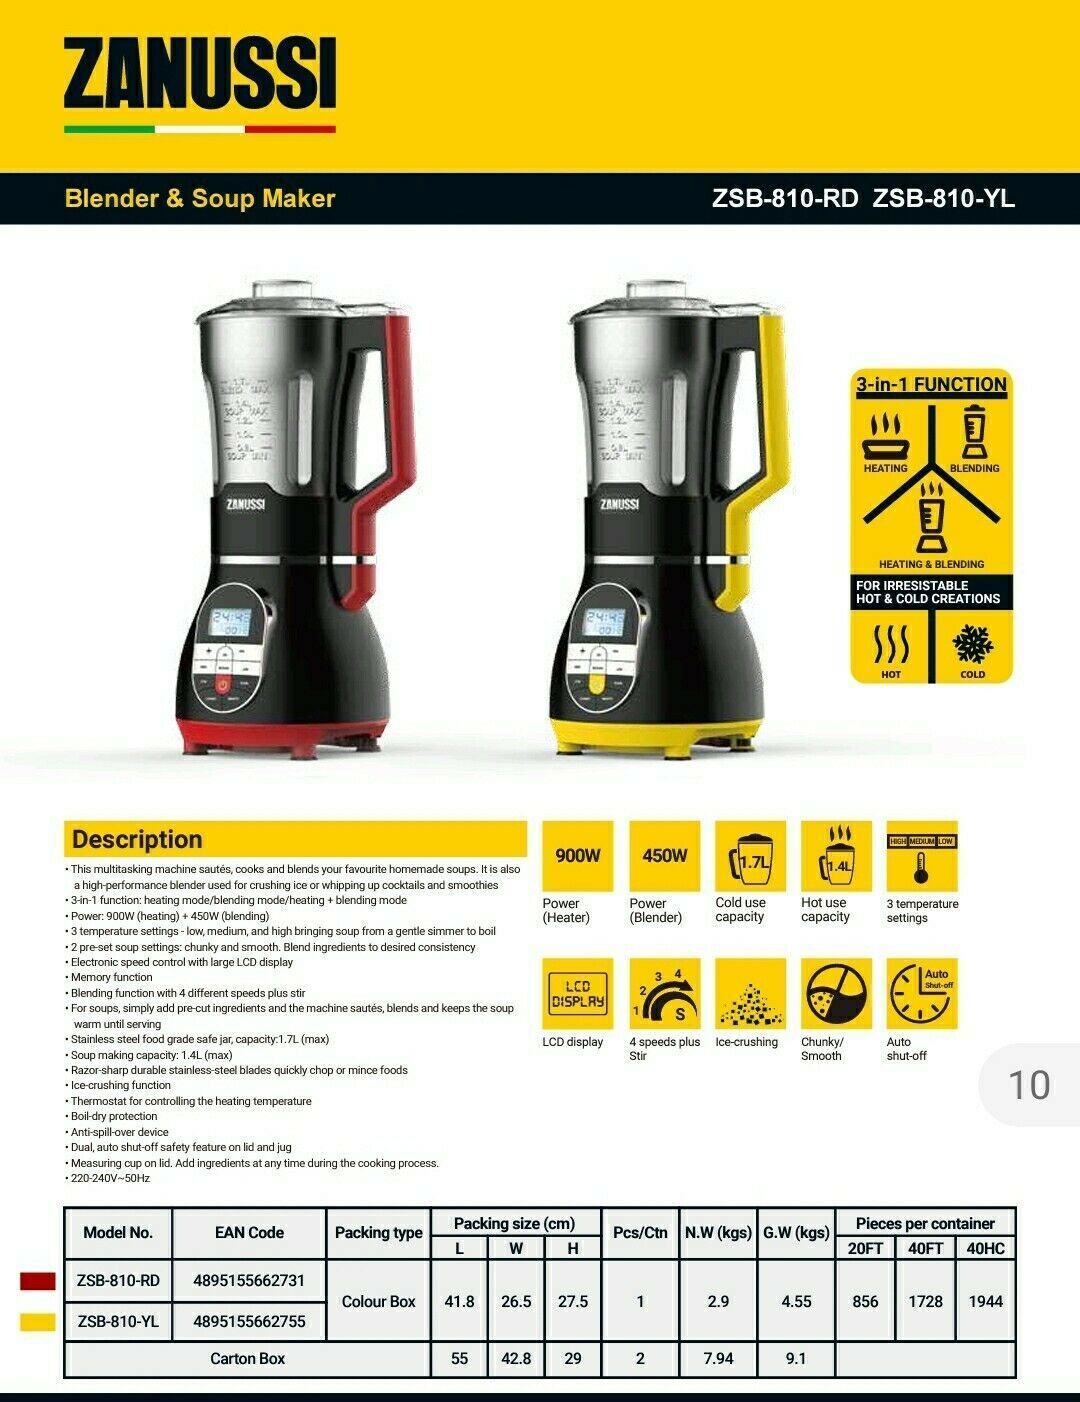 Zanussi ZANUSSI ITALIAN DESIGN Soup Maker/Blender RED ZSB-810-RD  1.7L Blender & Soup Maker Red & Black